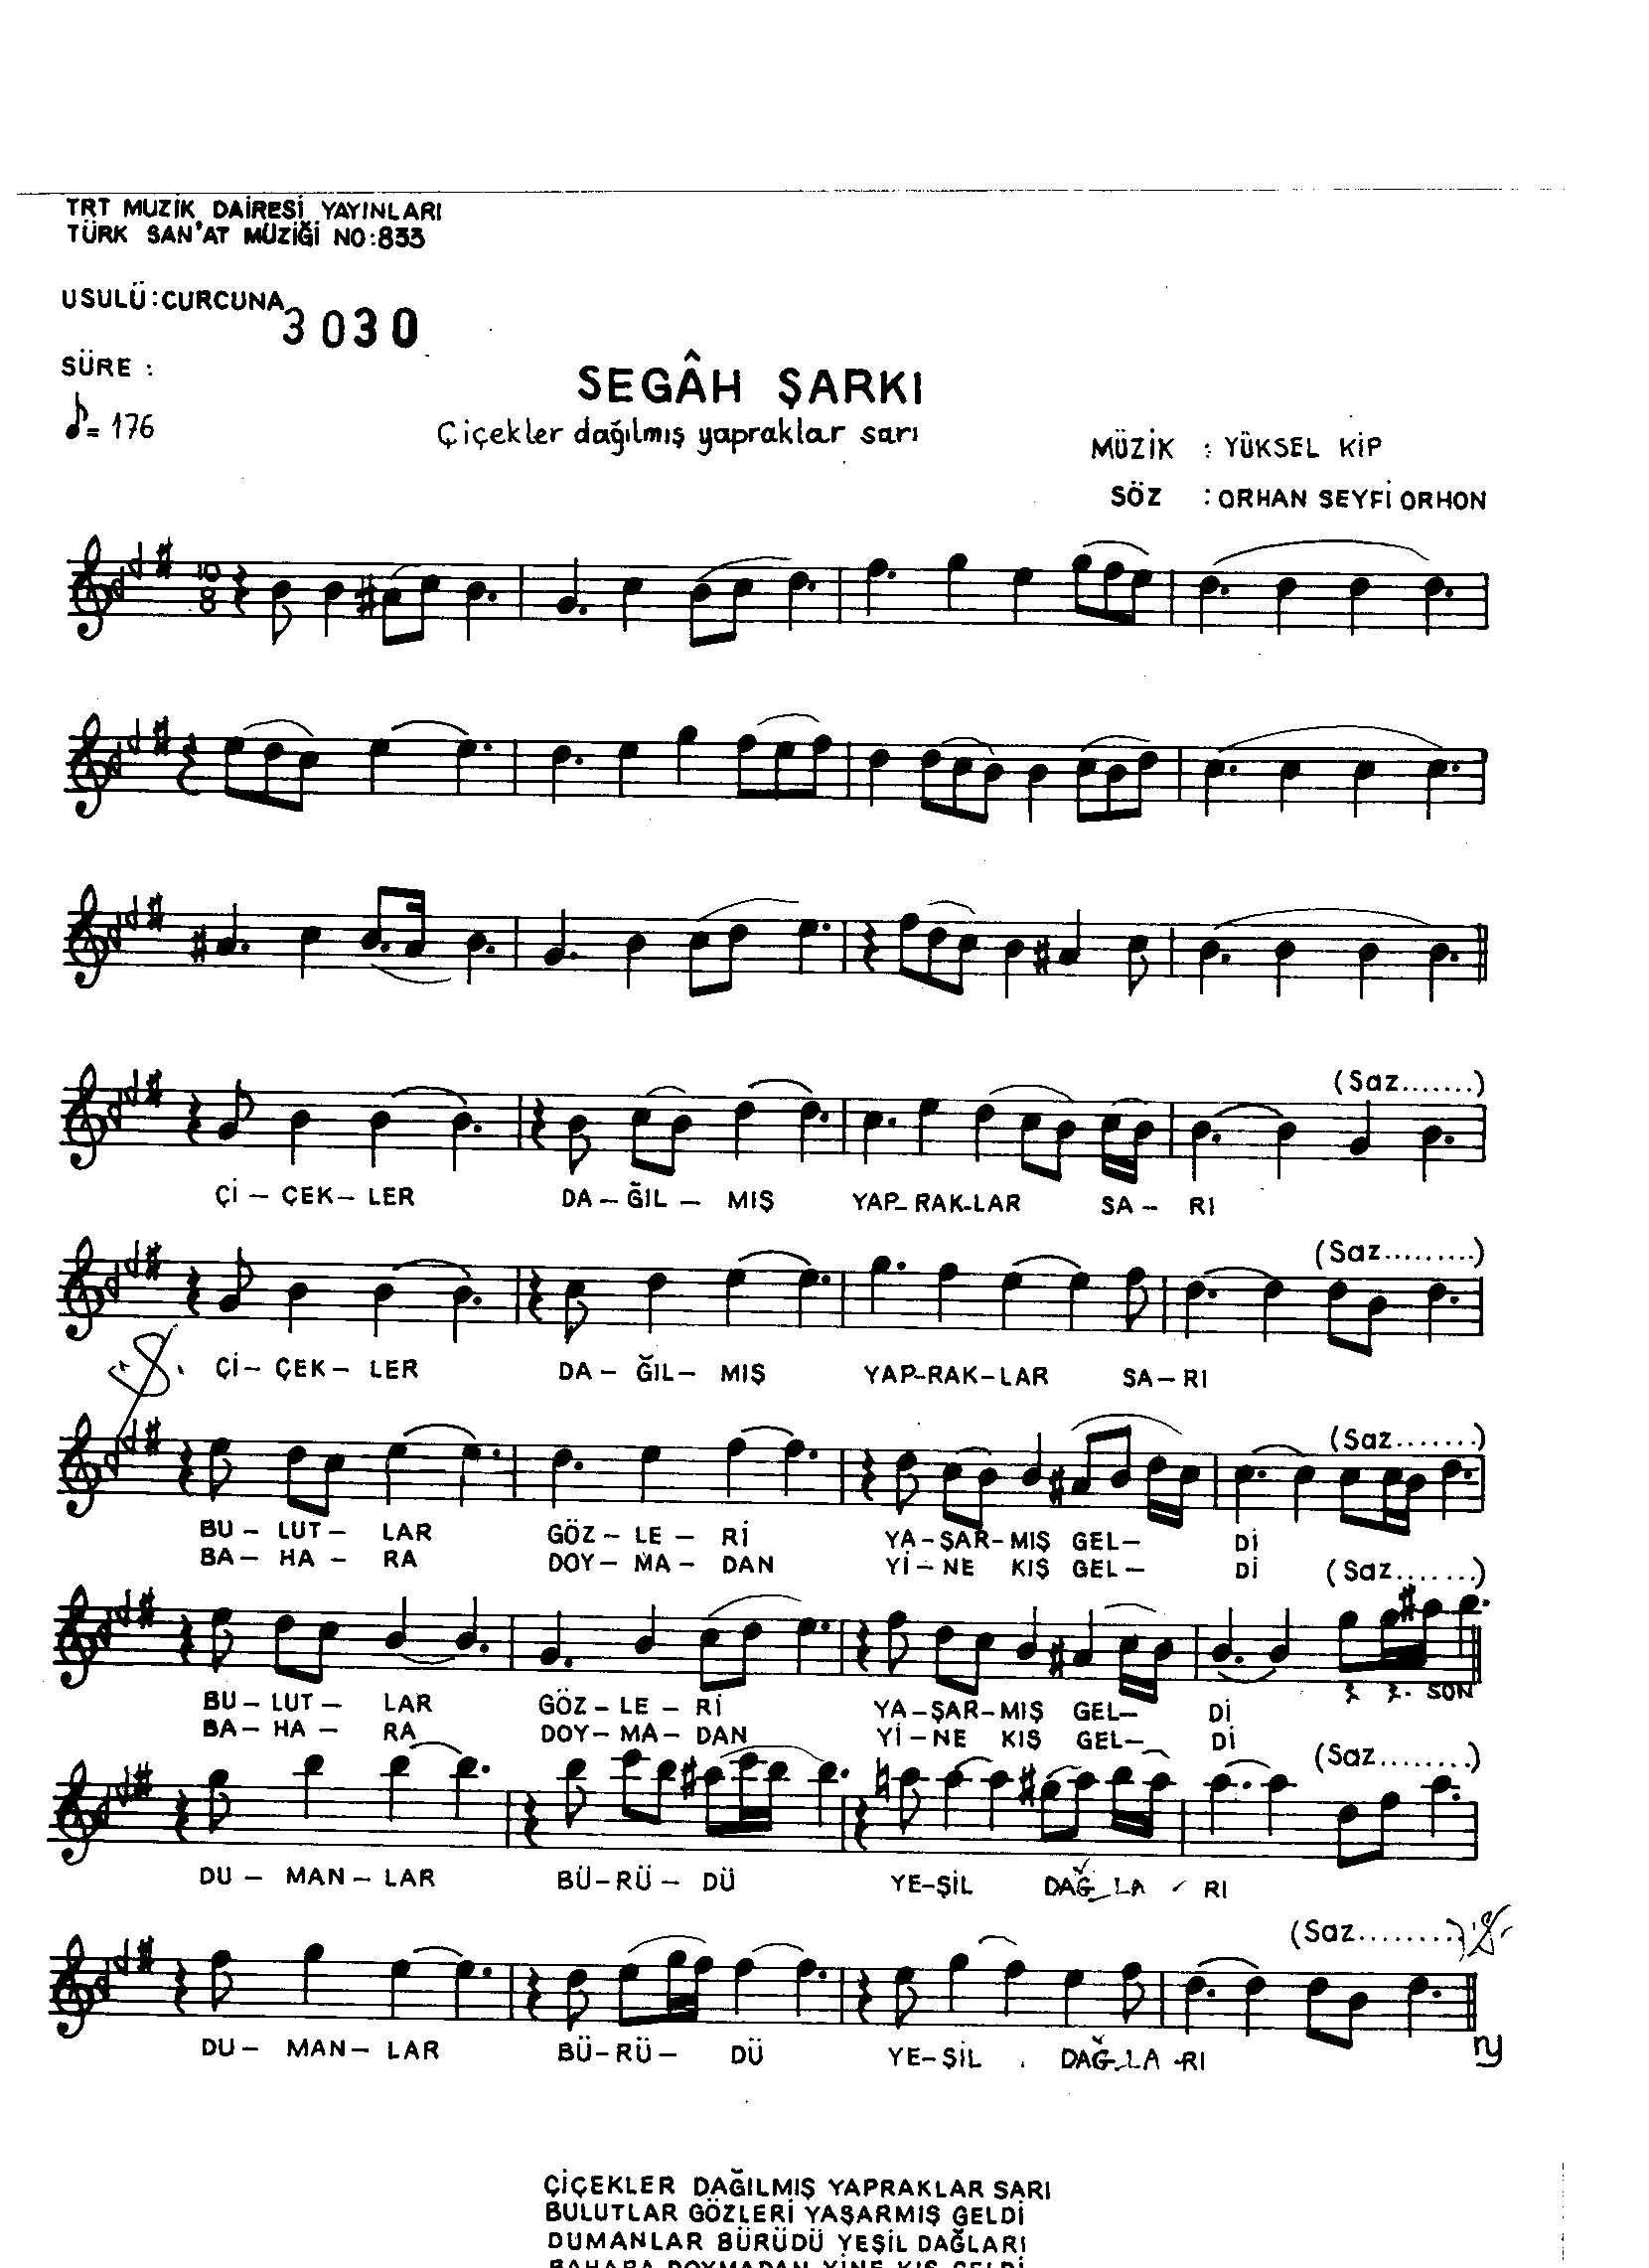 Segâh - Şarkı - Yüksel Kip - Sayfa 1